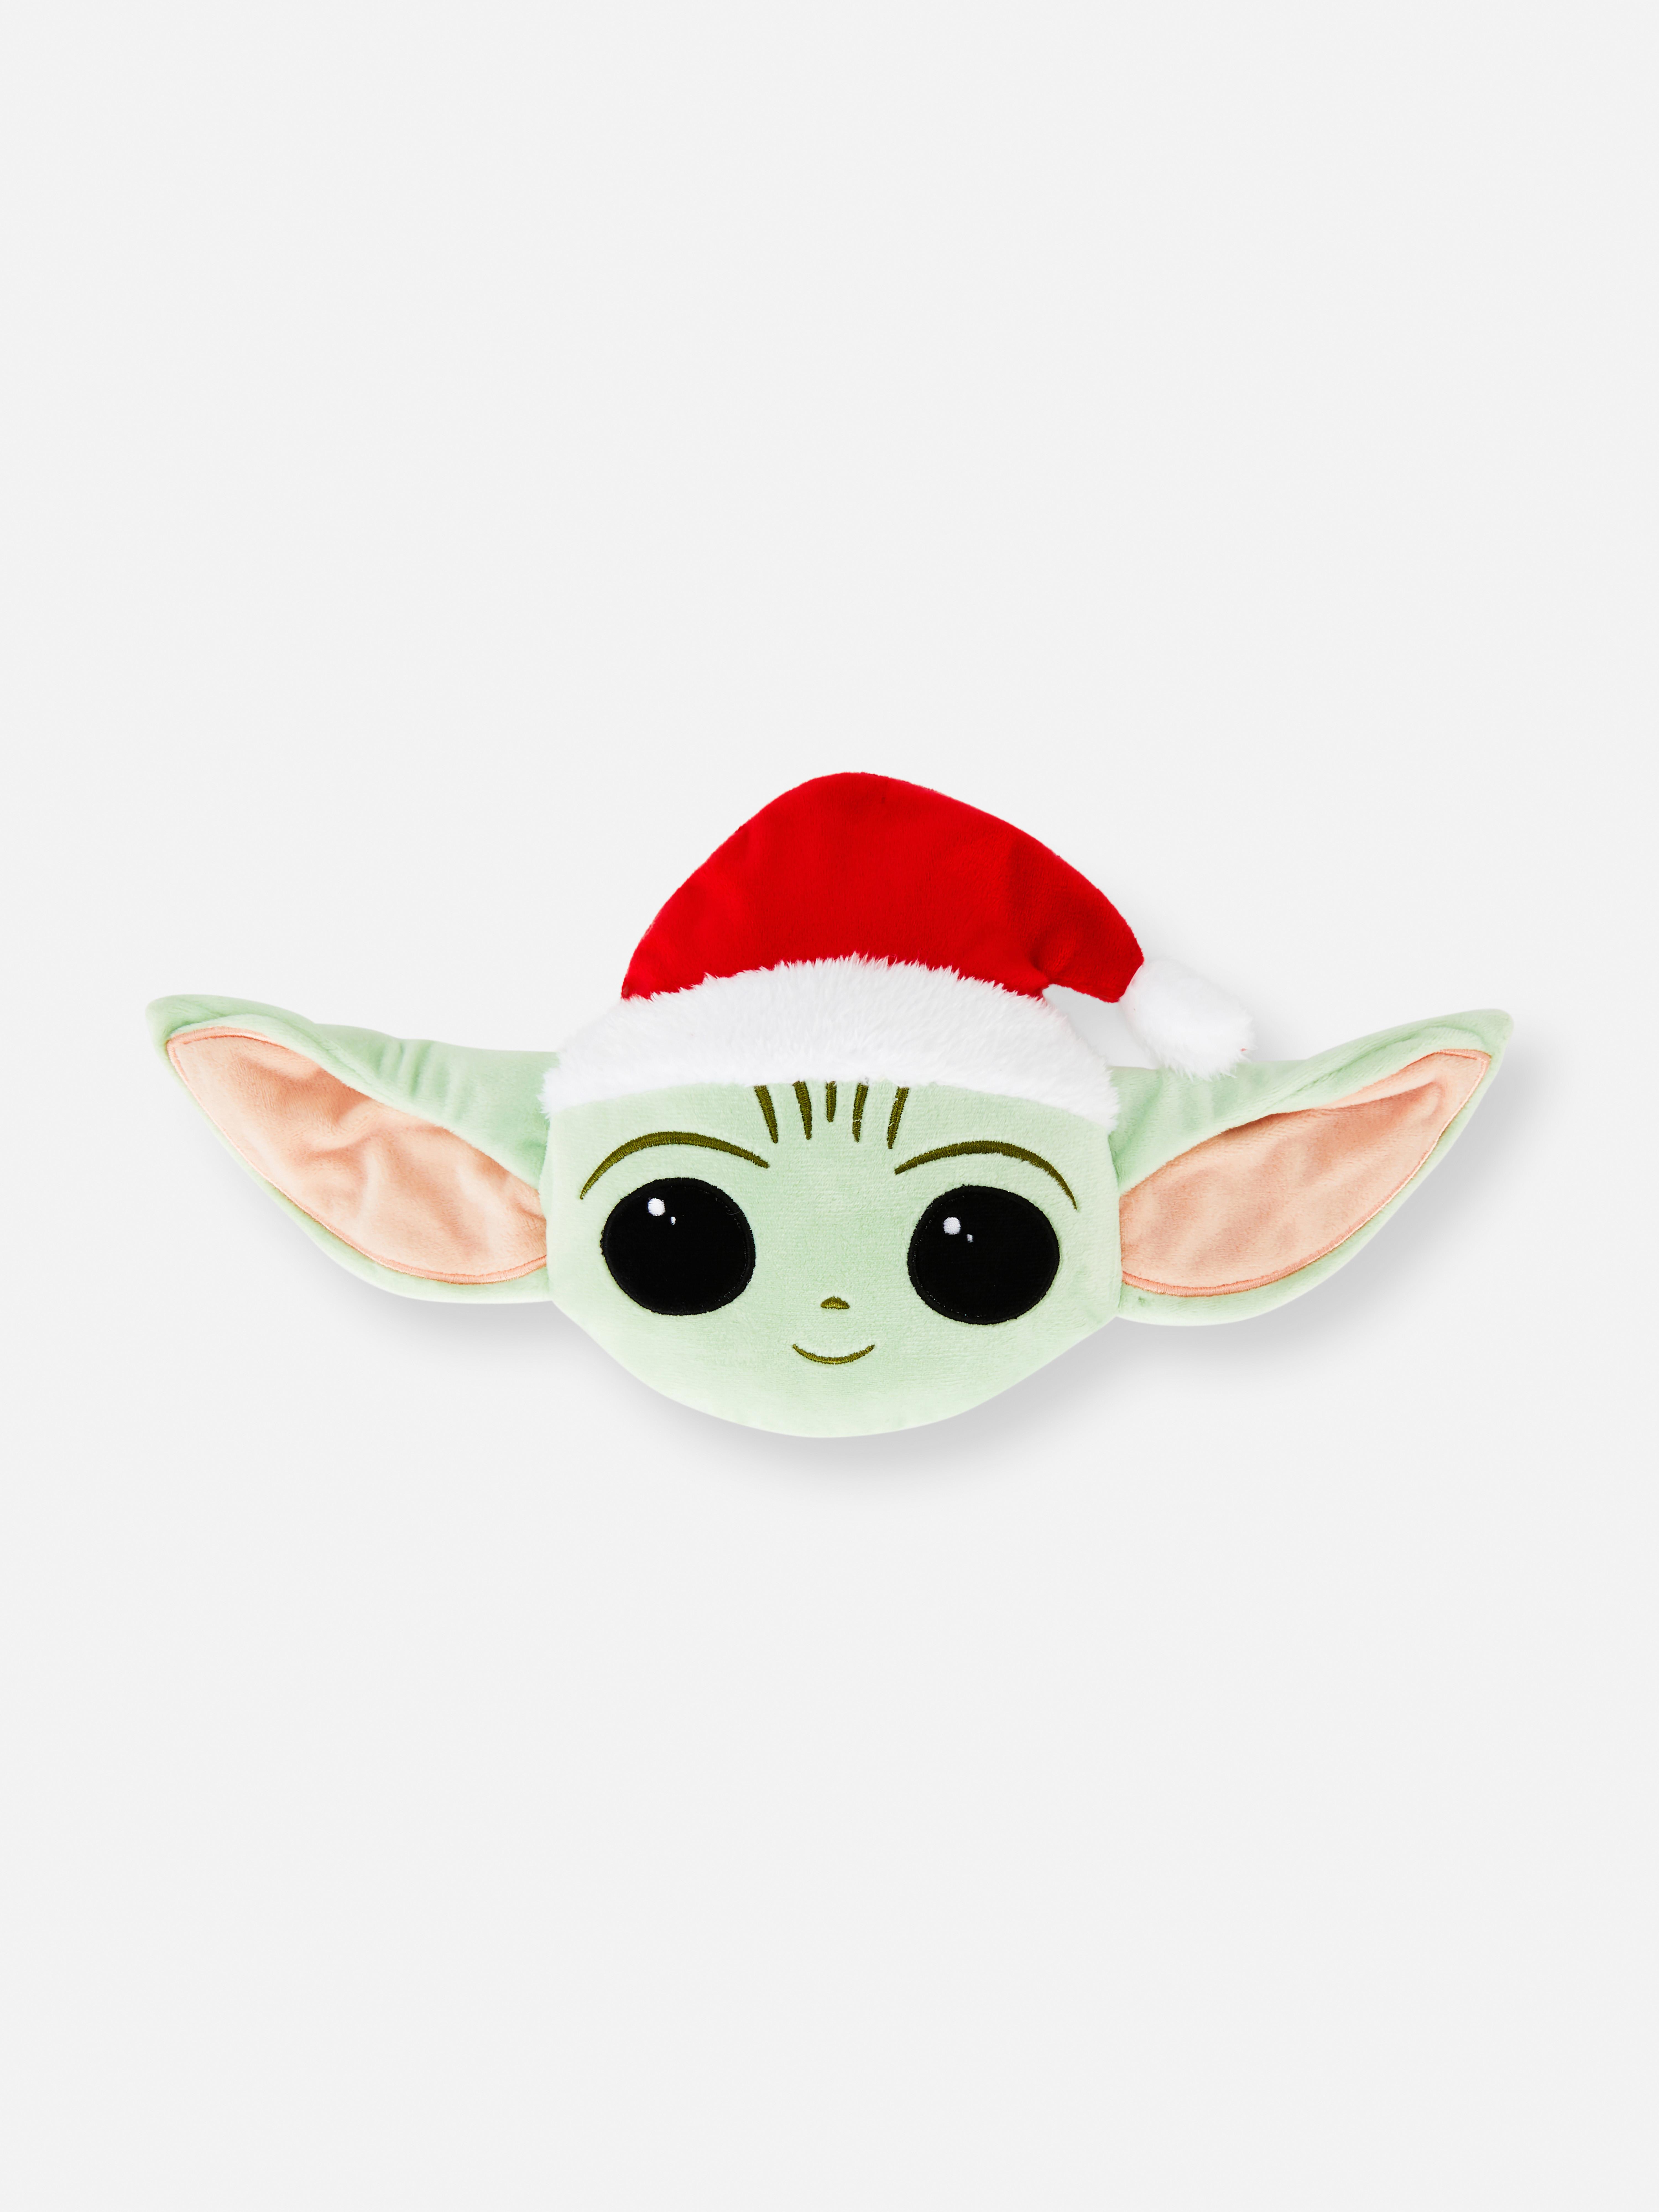 Kerstspeeltje voor huisdieren Star Wars Baby Yoda